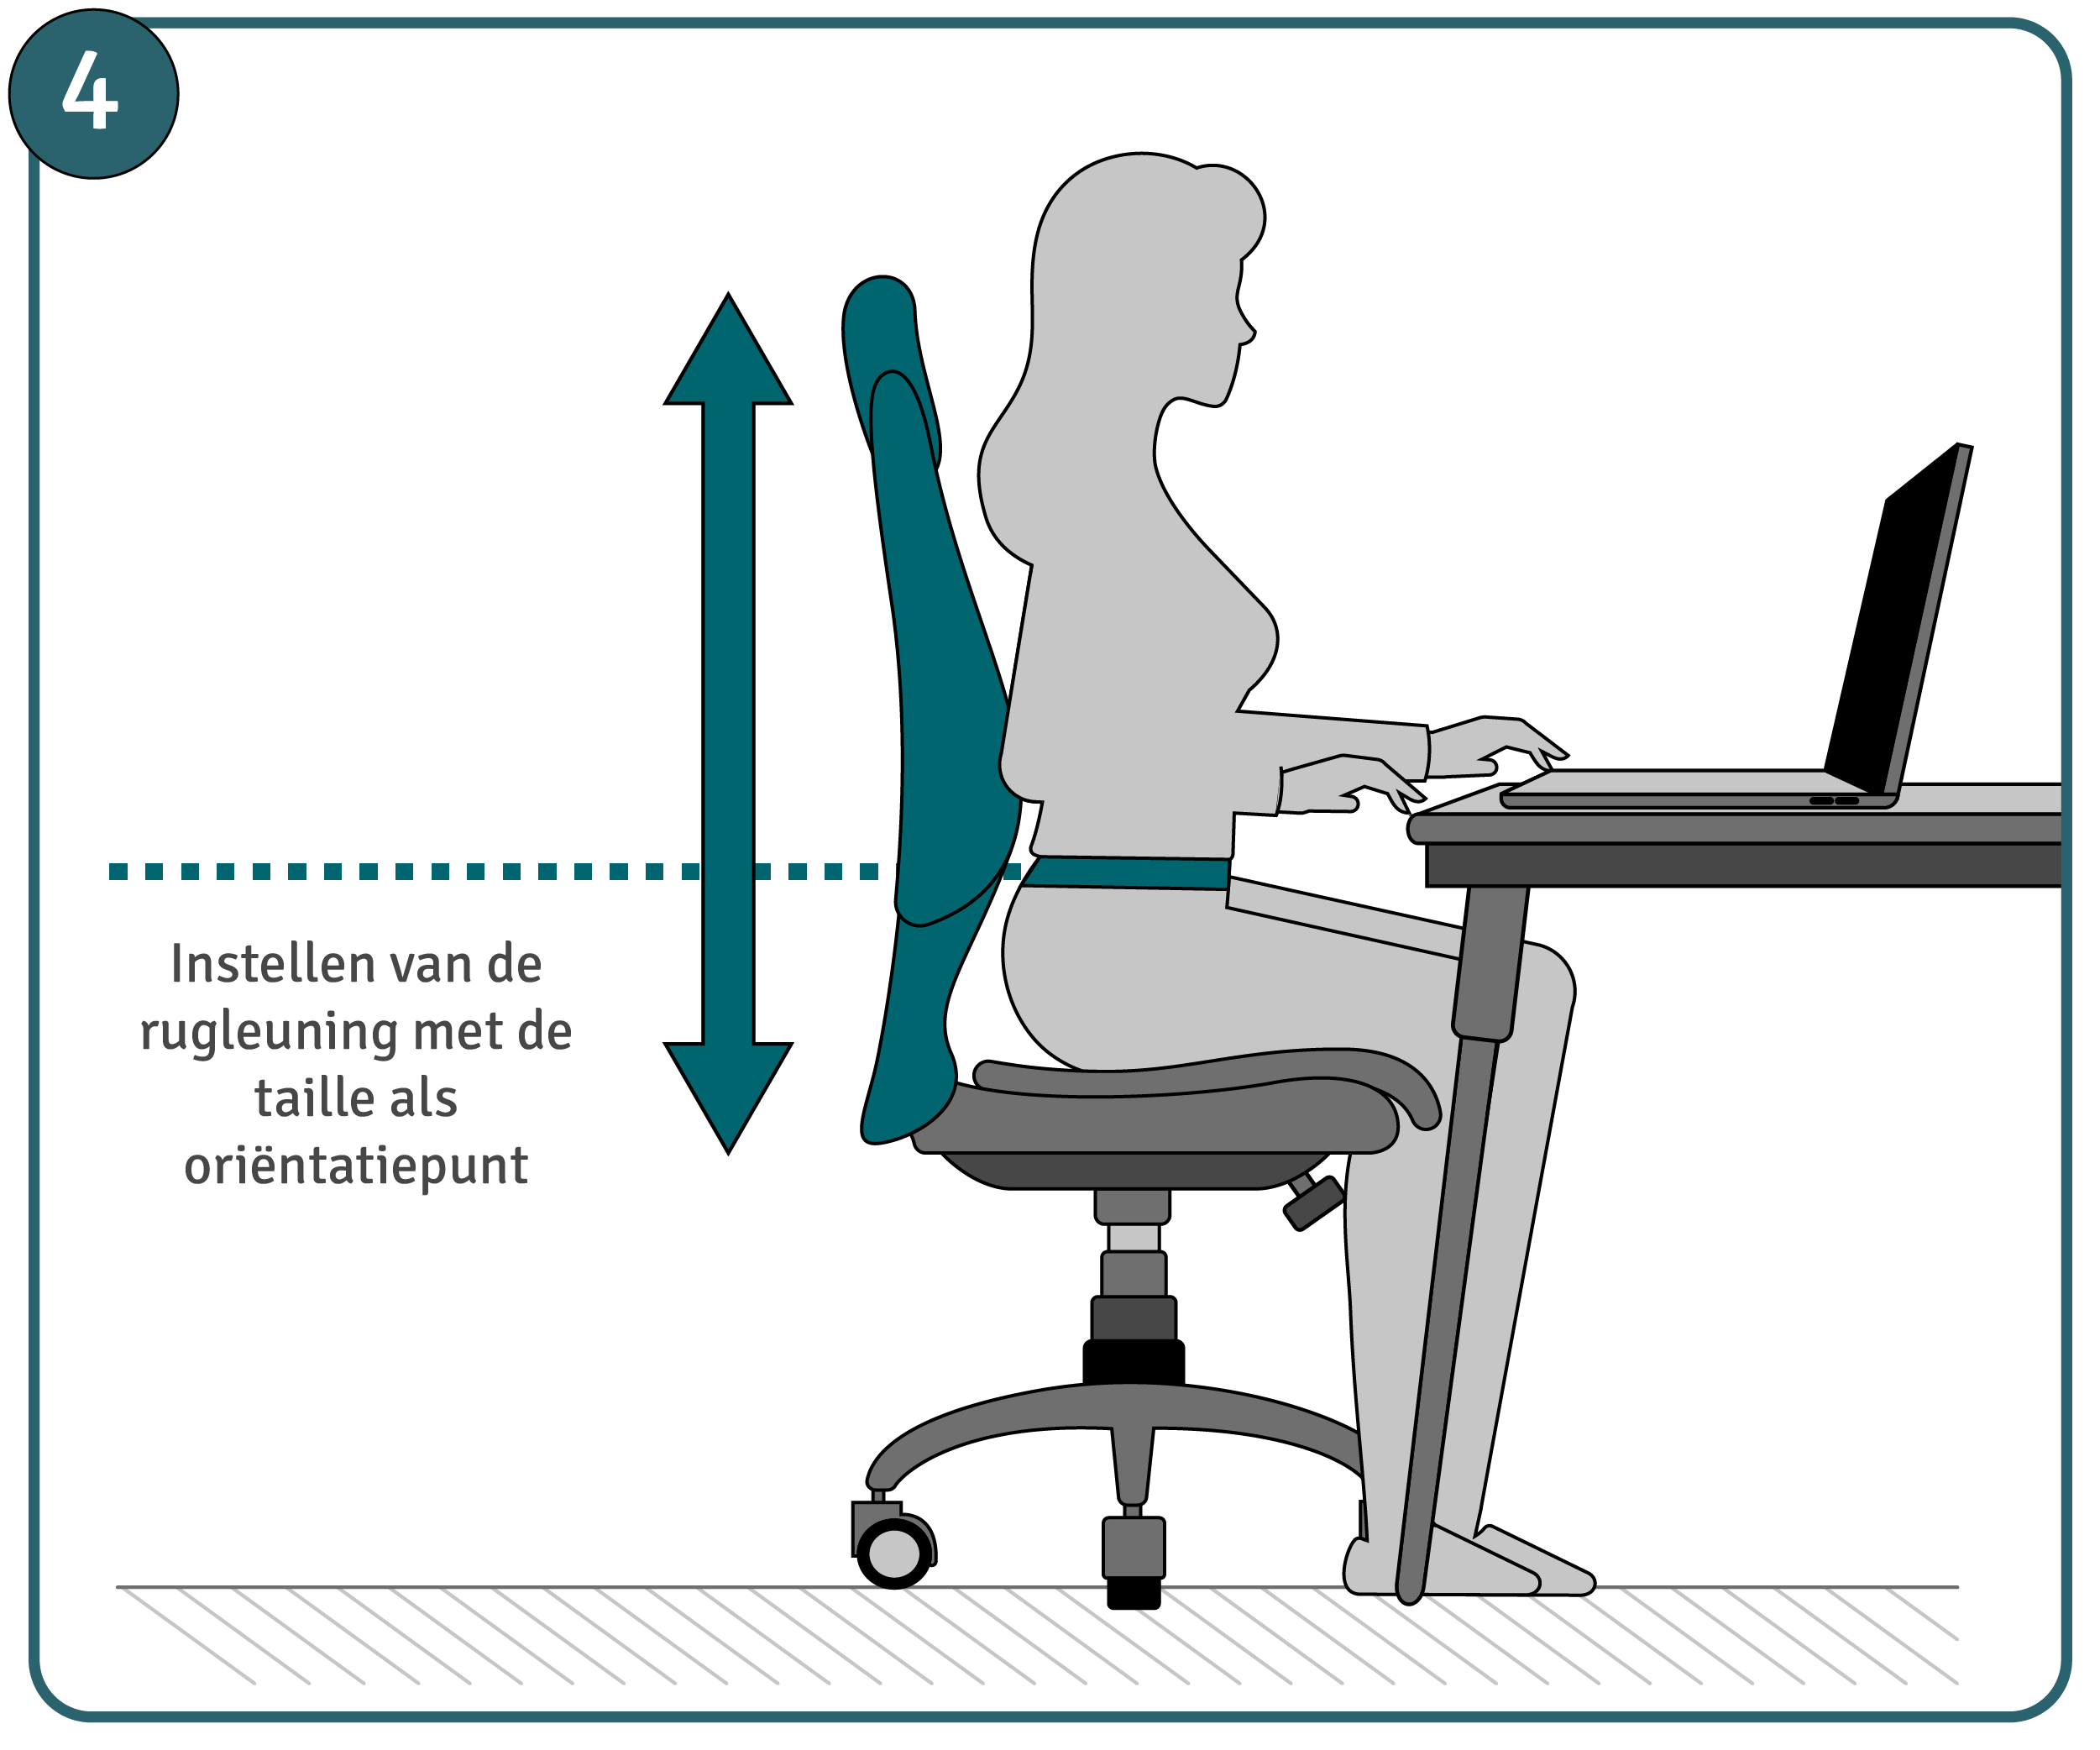 Handleiding bureaustoel instellen, stap 4: rugleuning